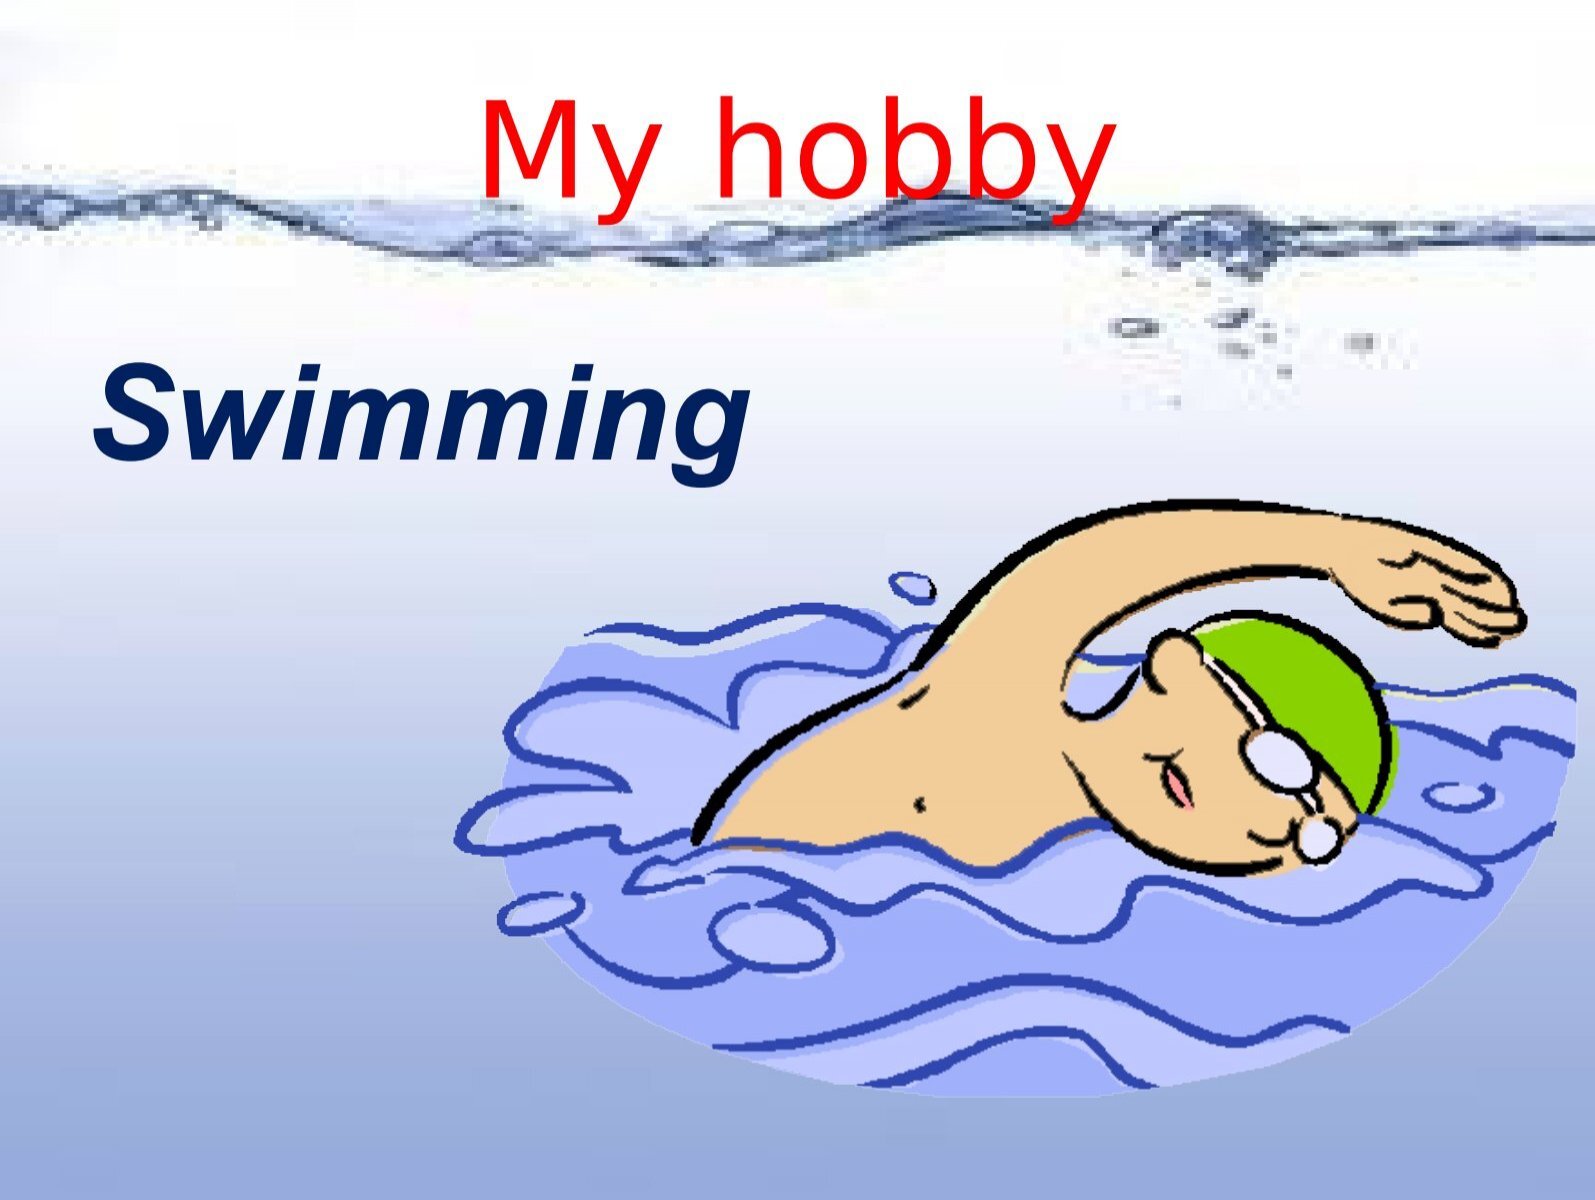 Переведи на английский плавать. Хобби плавание на английском языке. Моё хобби плавание на английском. Мое хобби плавание. My Hobby swimming на английском.